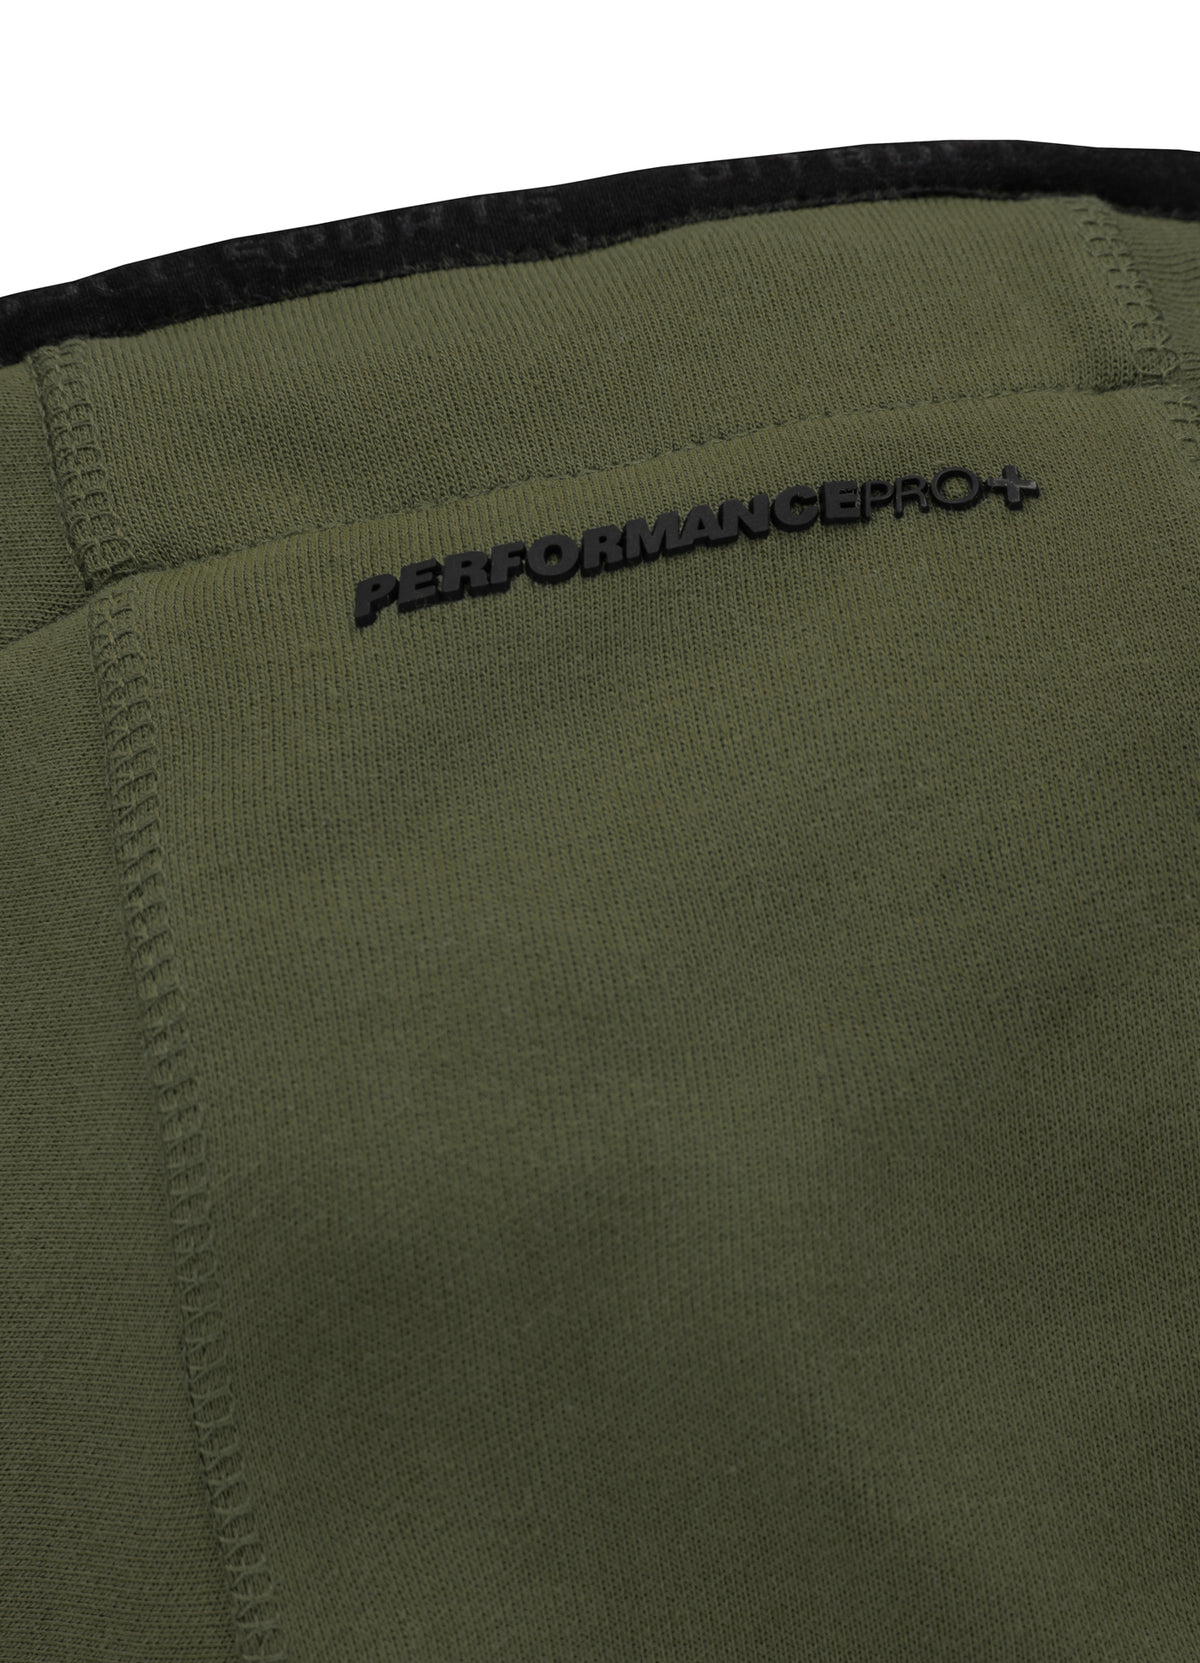 Thelborn Olive Hooded Zip Sweatshirt.